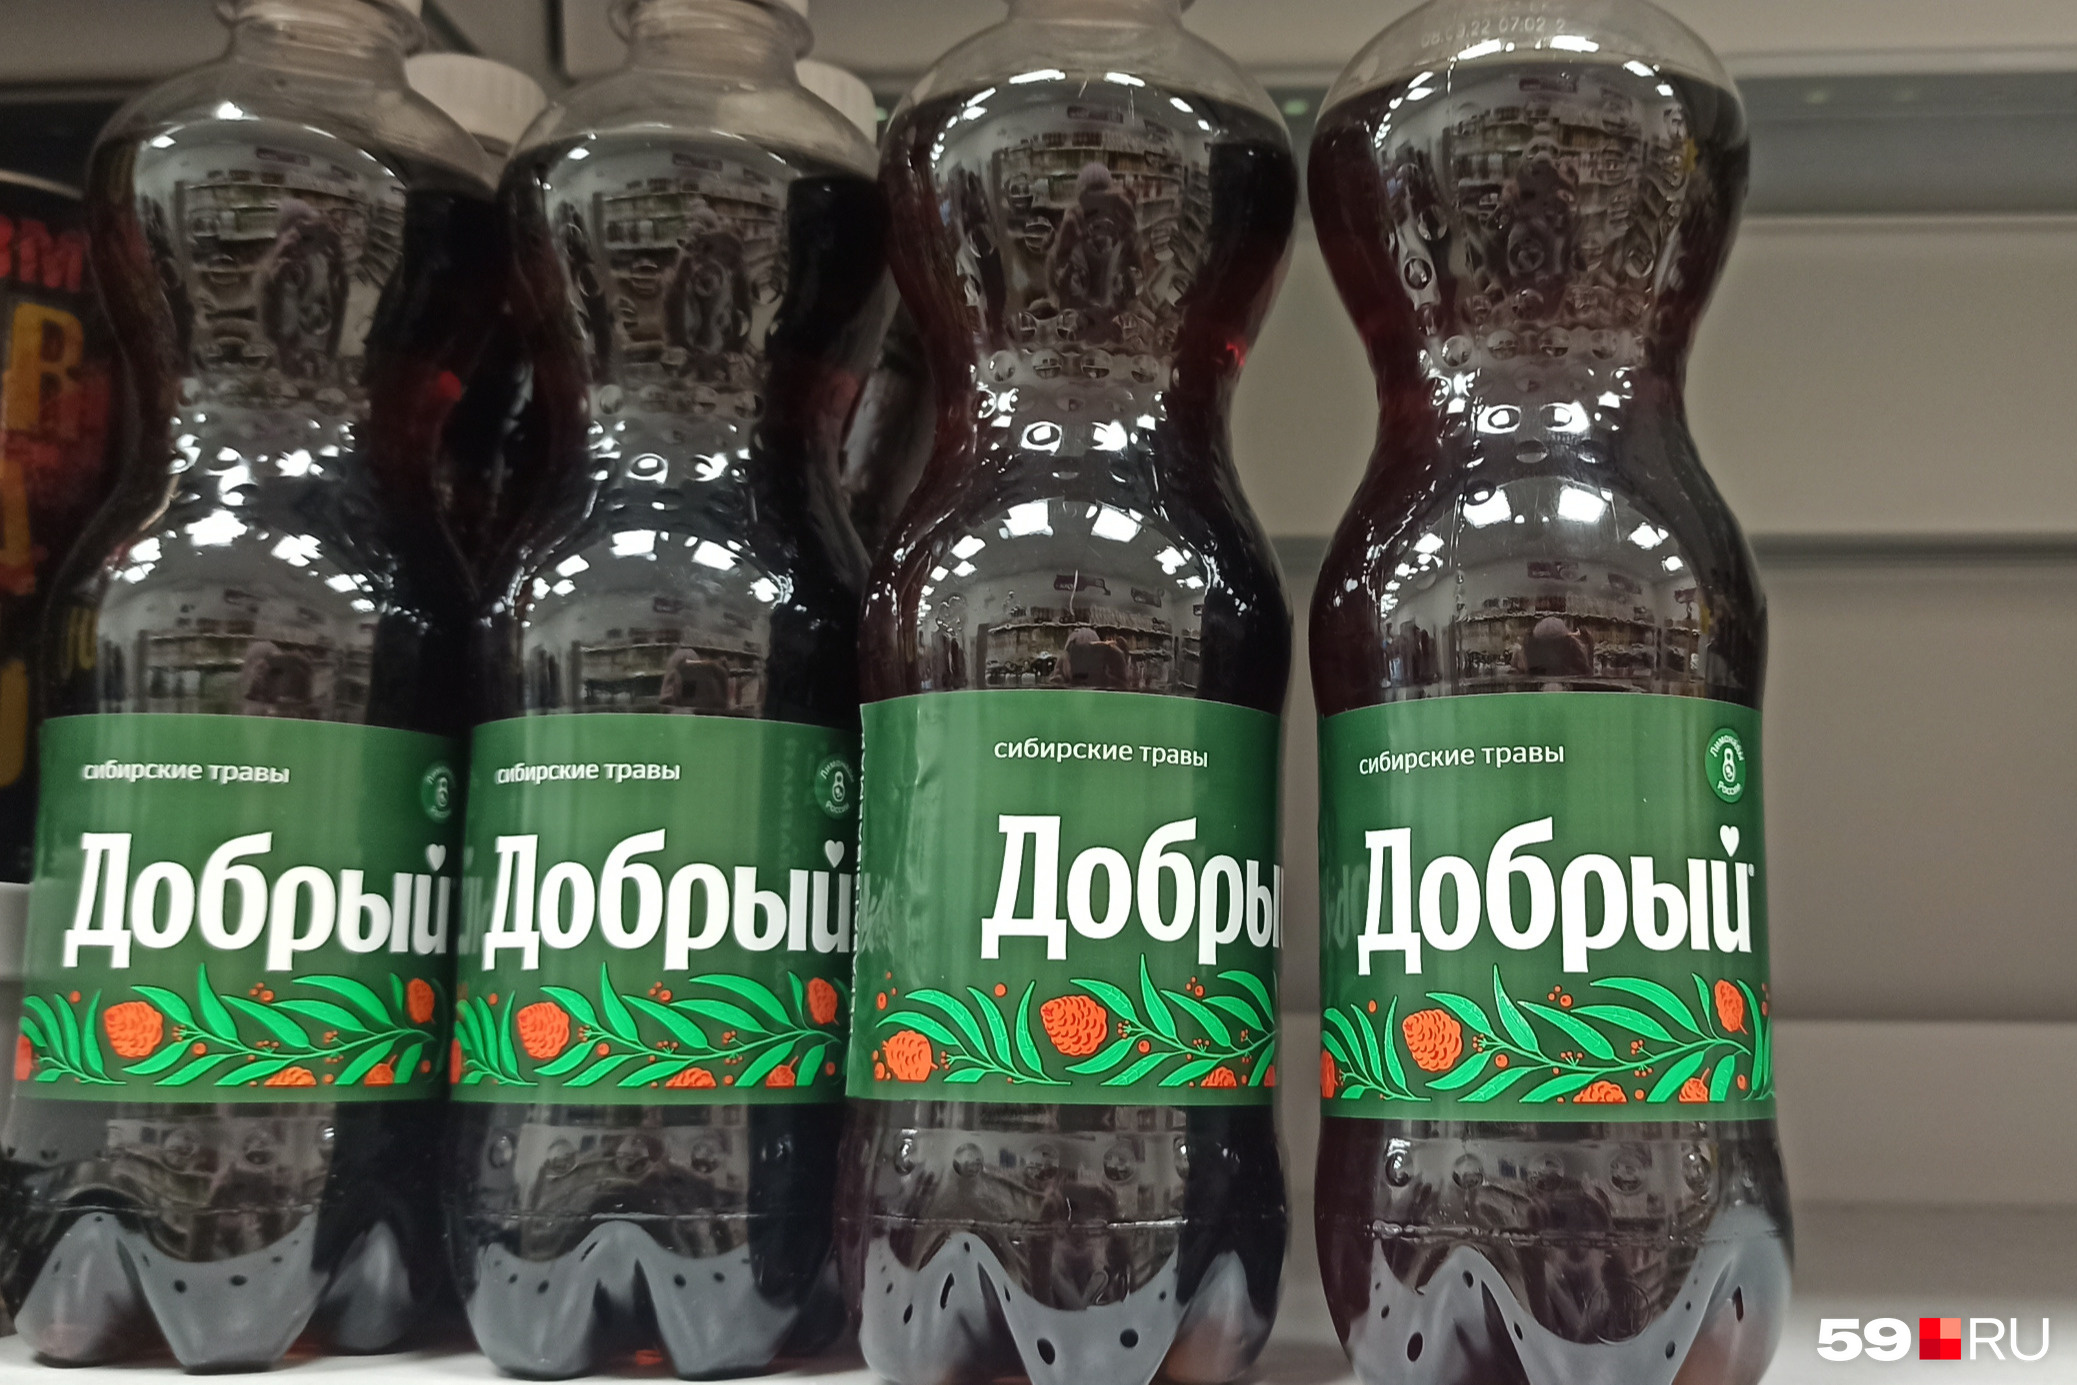 Под брендом «Добрый» делают и напиток «Сибирские травы»